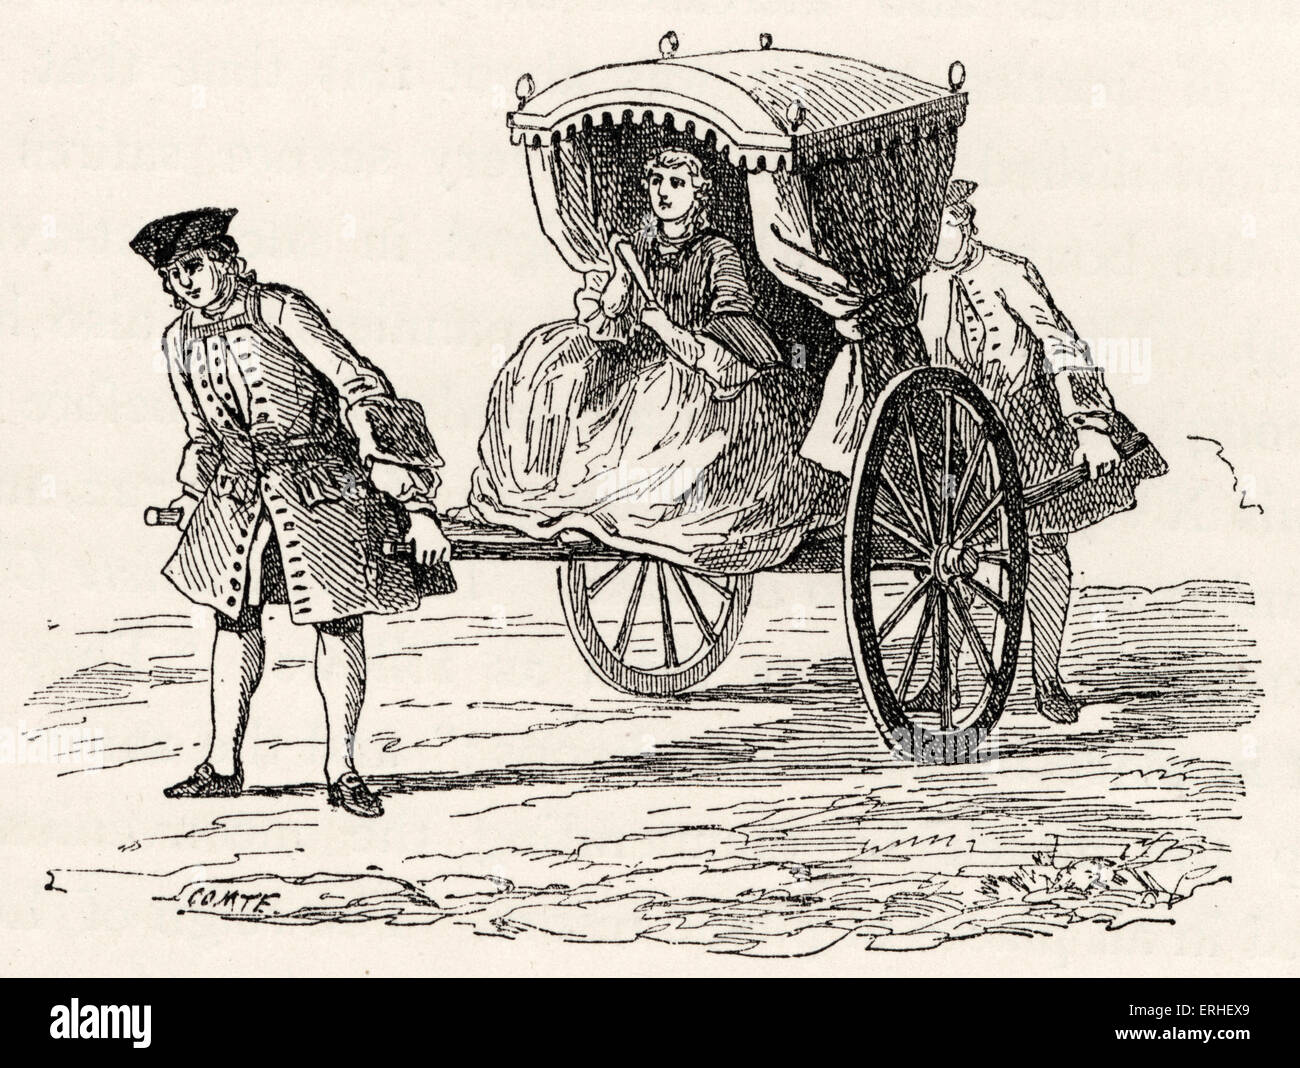 La vita quotidiana nella storia francese: una signora vestita elegantemente arrivare nel suo "chaise roulante, tratte dai suoi servi. Aristocrazia, Foto Stock